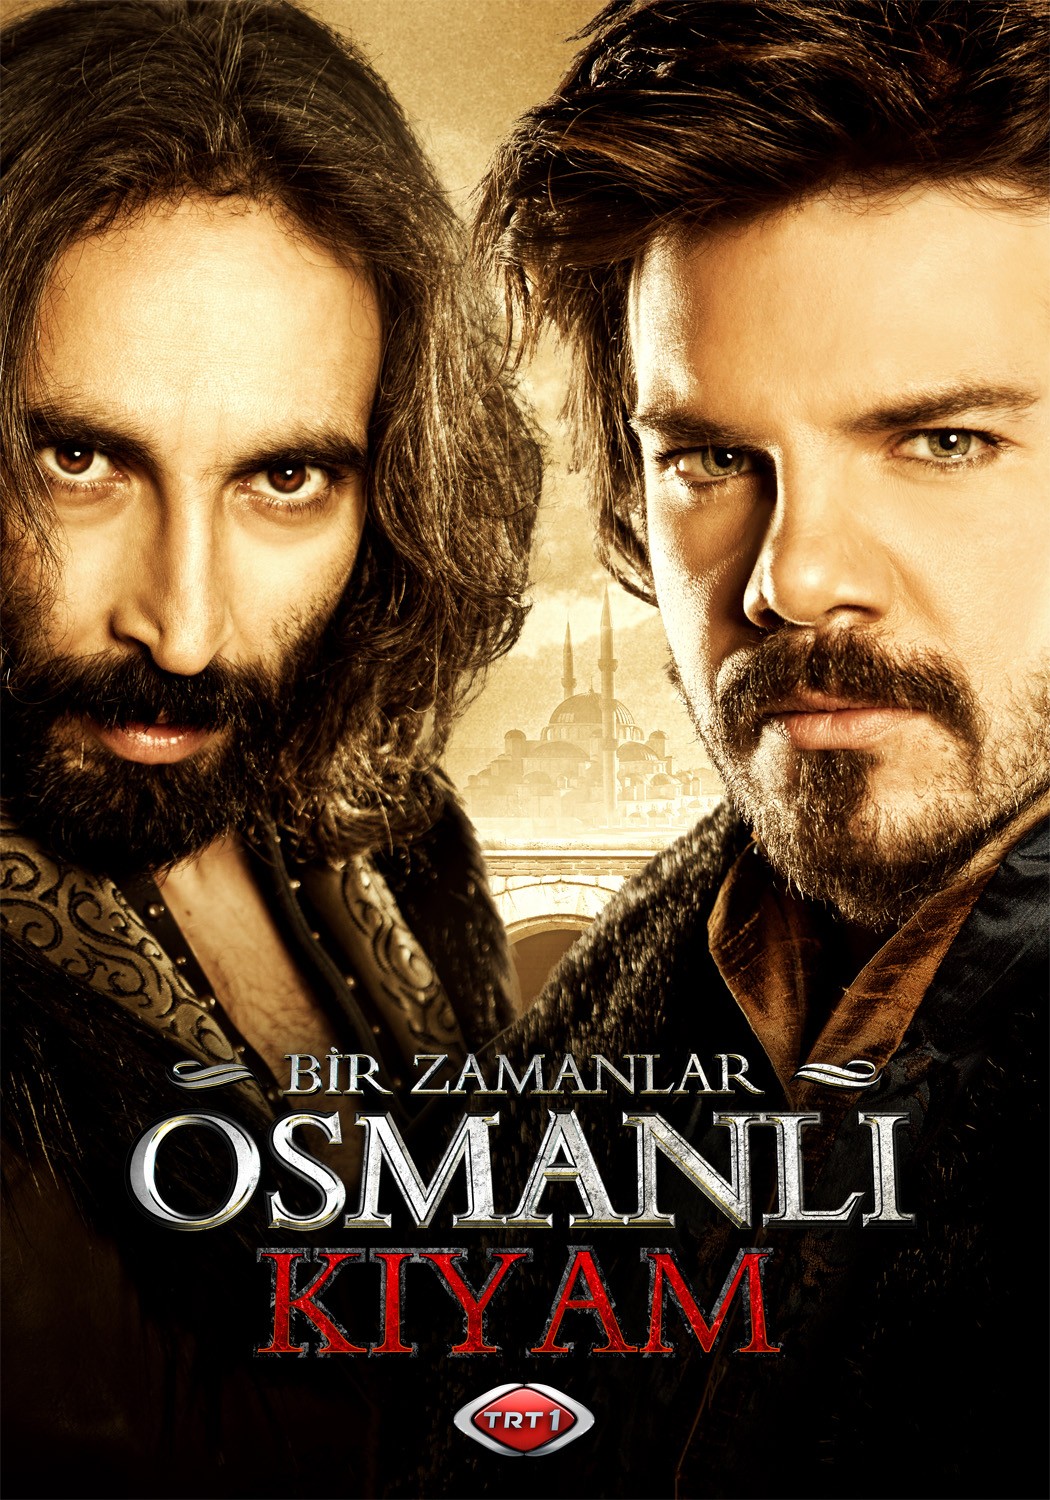 Extra Large TV Poster Image for Bir Zamanlar Osmanli Kiyam (#10 of 26)